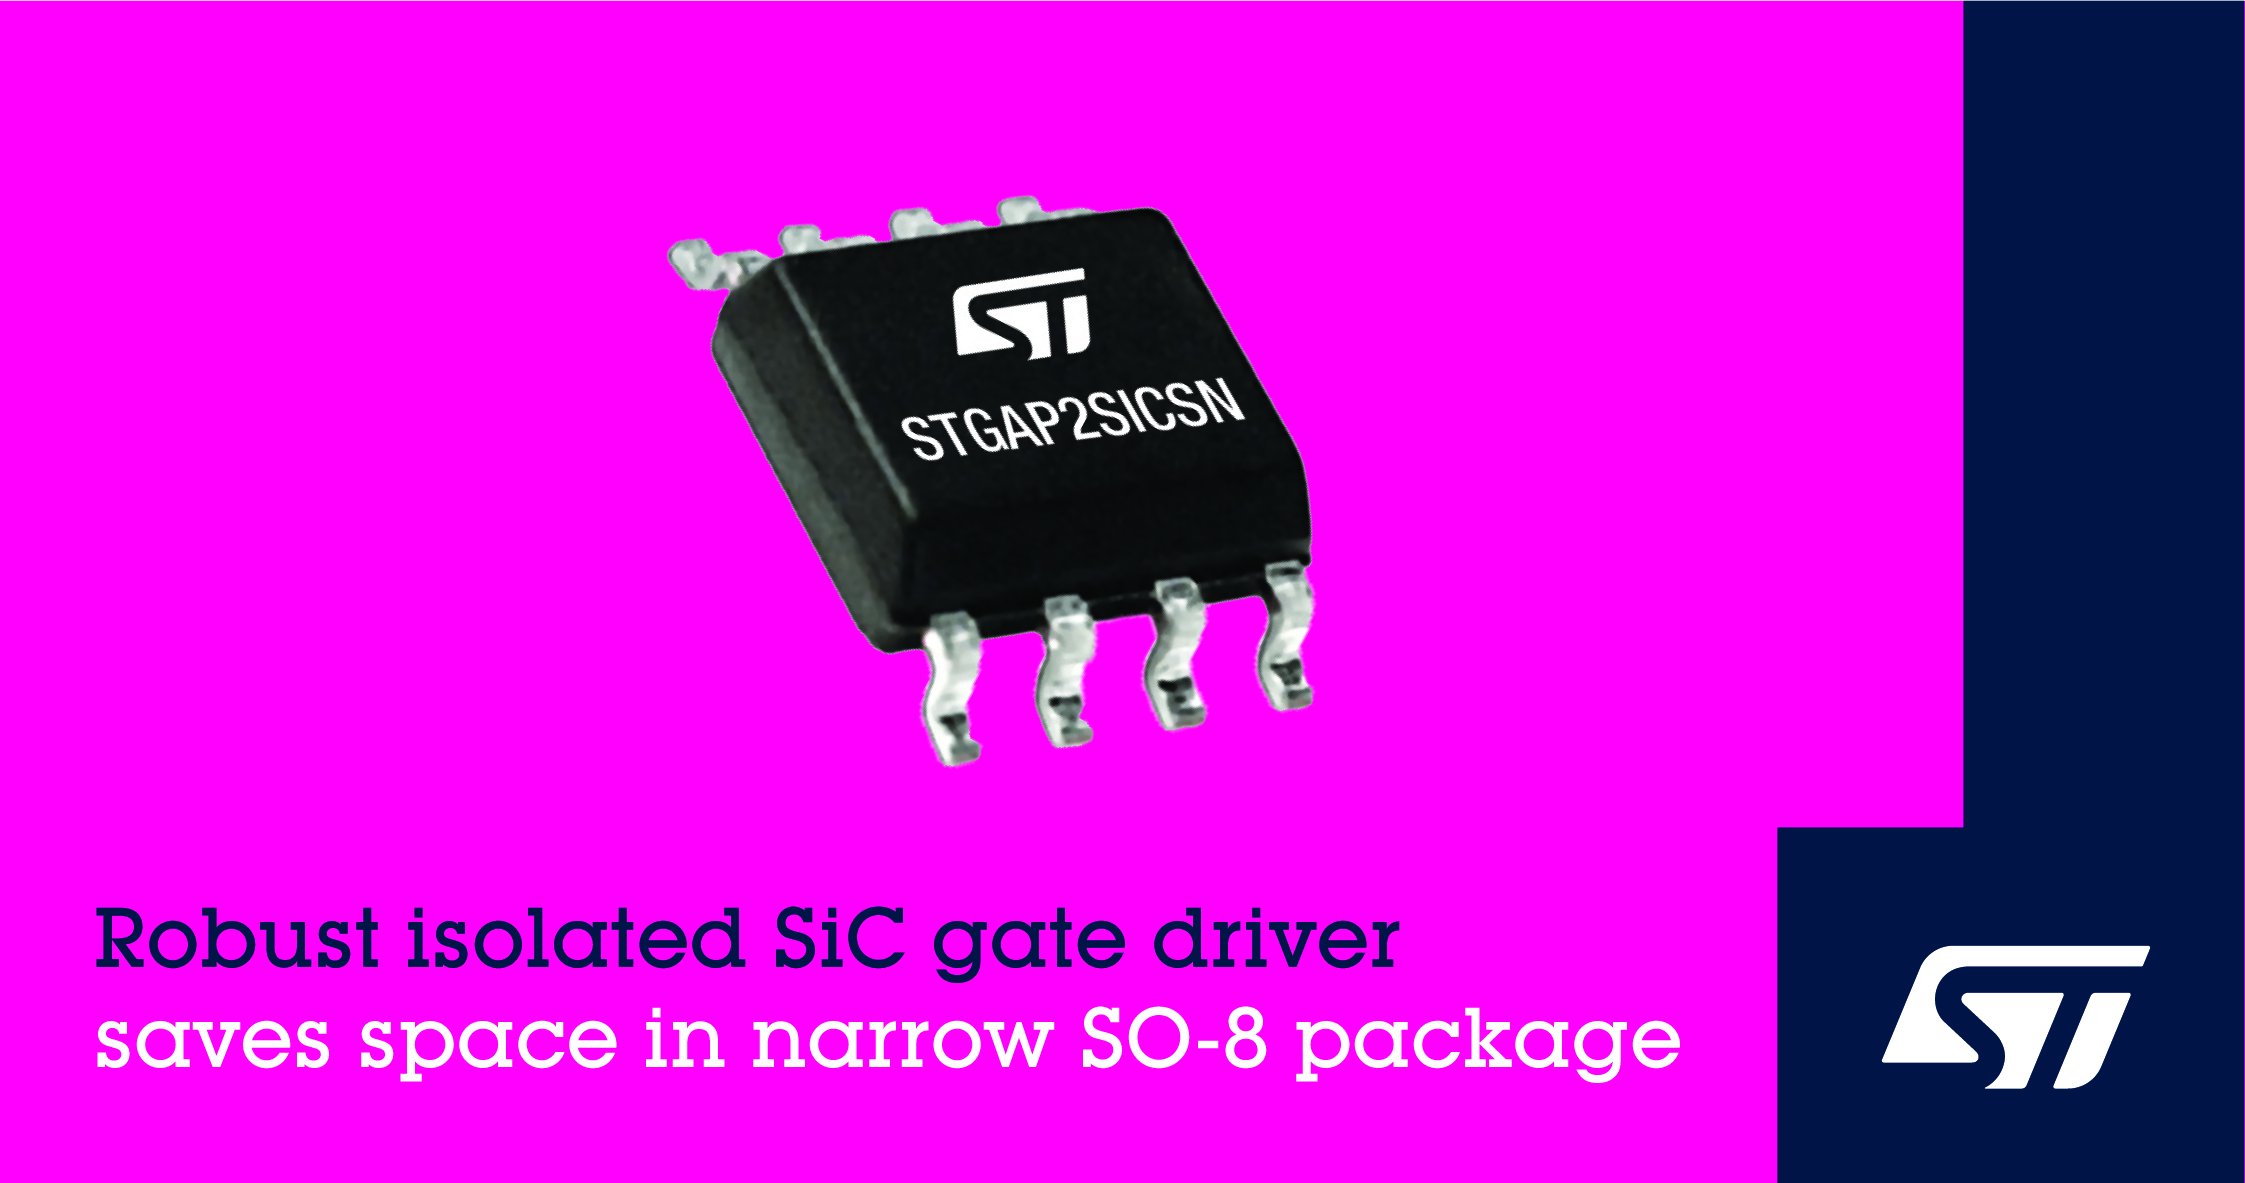 意法半導體的穩健的隔離式 SiC 柵極驅動器采用窄型 SO-8 封裝可節省空間